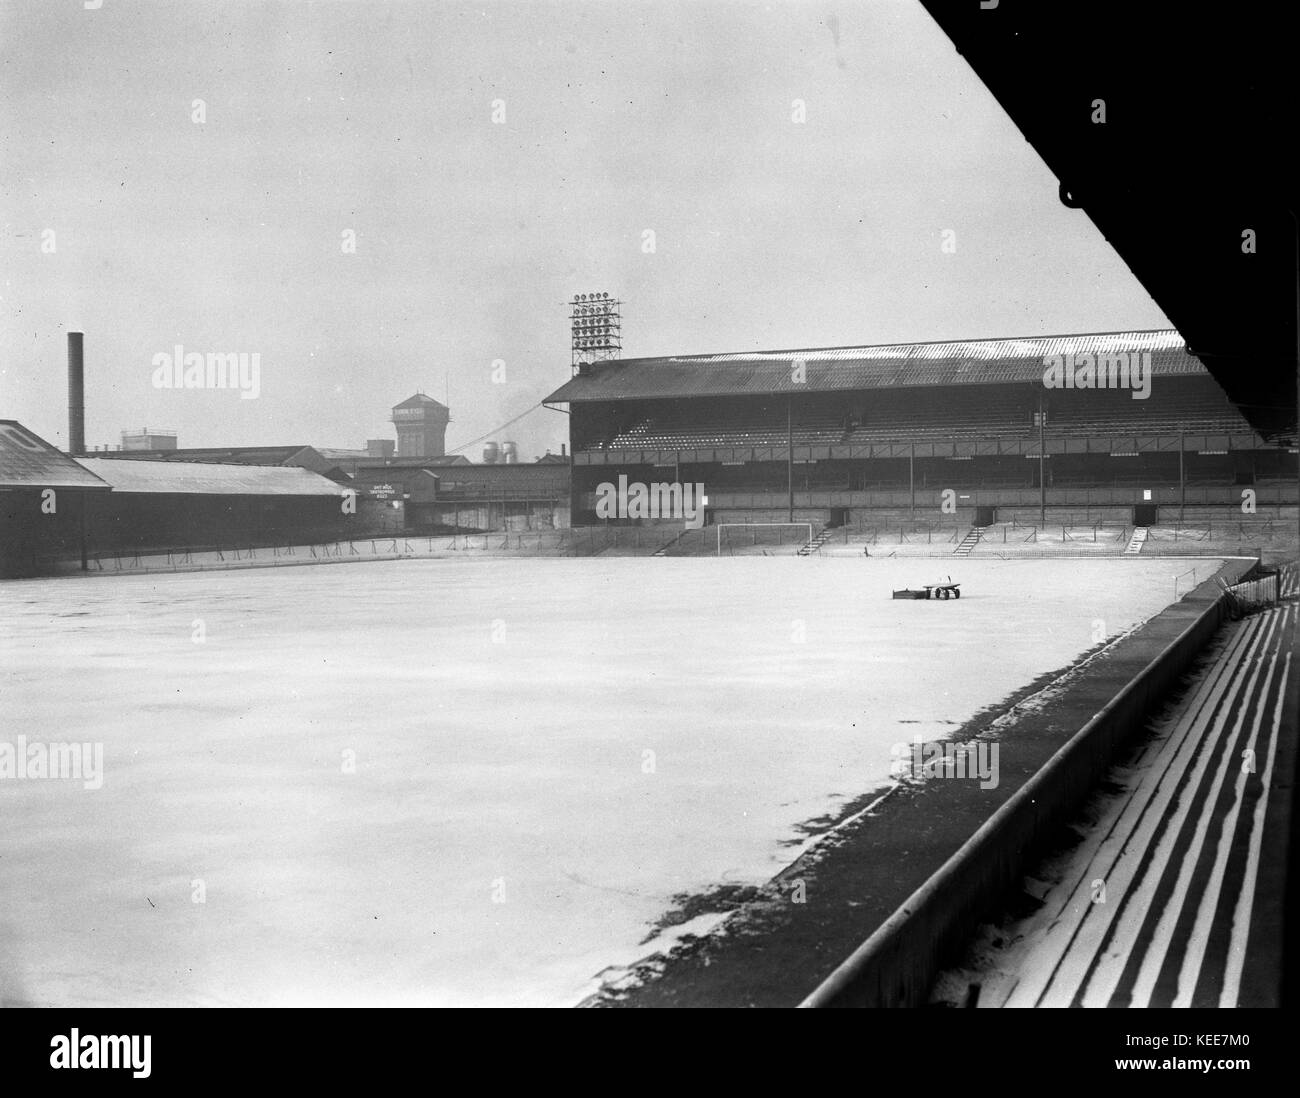 Derby County Football Club stadium desde 1895 hasta 1997 - El béisbol Tierra - bajo la nieve el 22 de enero de 1963. Fotografía por Tony Henshaw *** *** título Local de la propiedad negativo original. Foto de stock